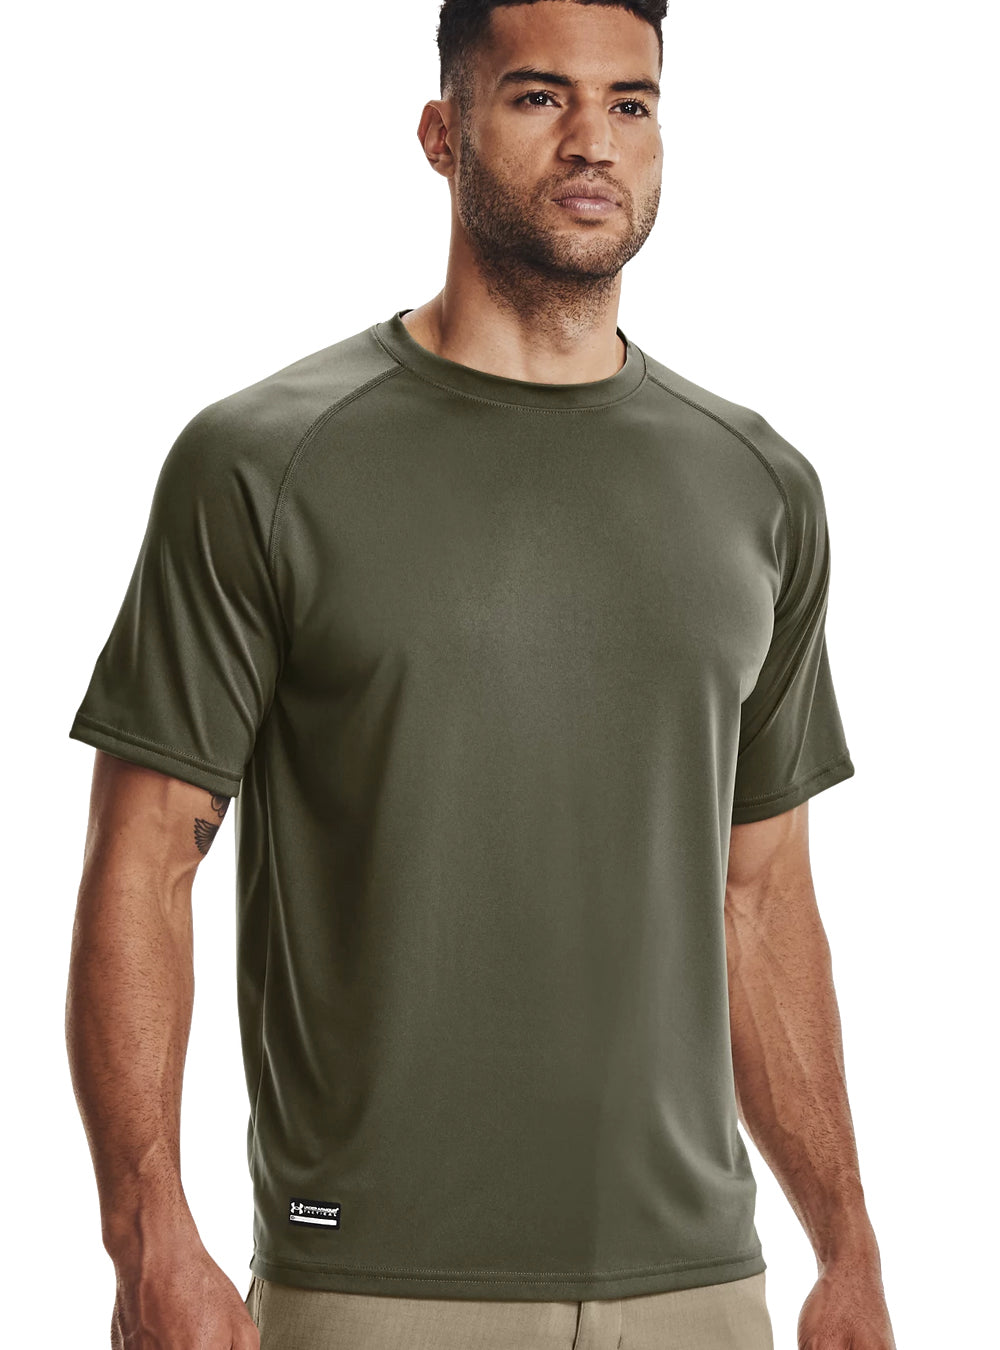 Under Armour Tactical Tech Short Sleeve T-Shirt - Marine OD Green